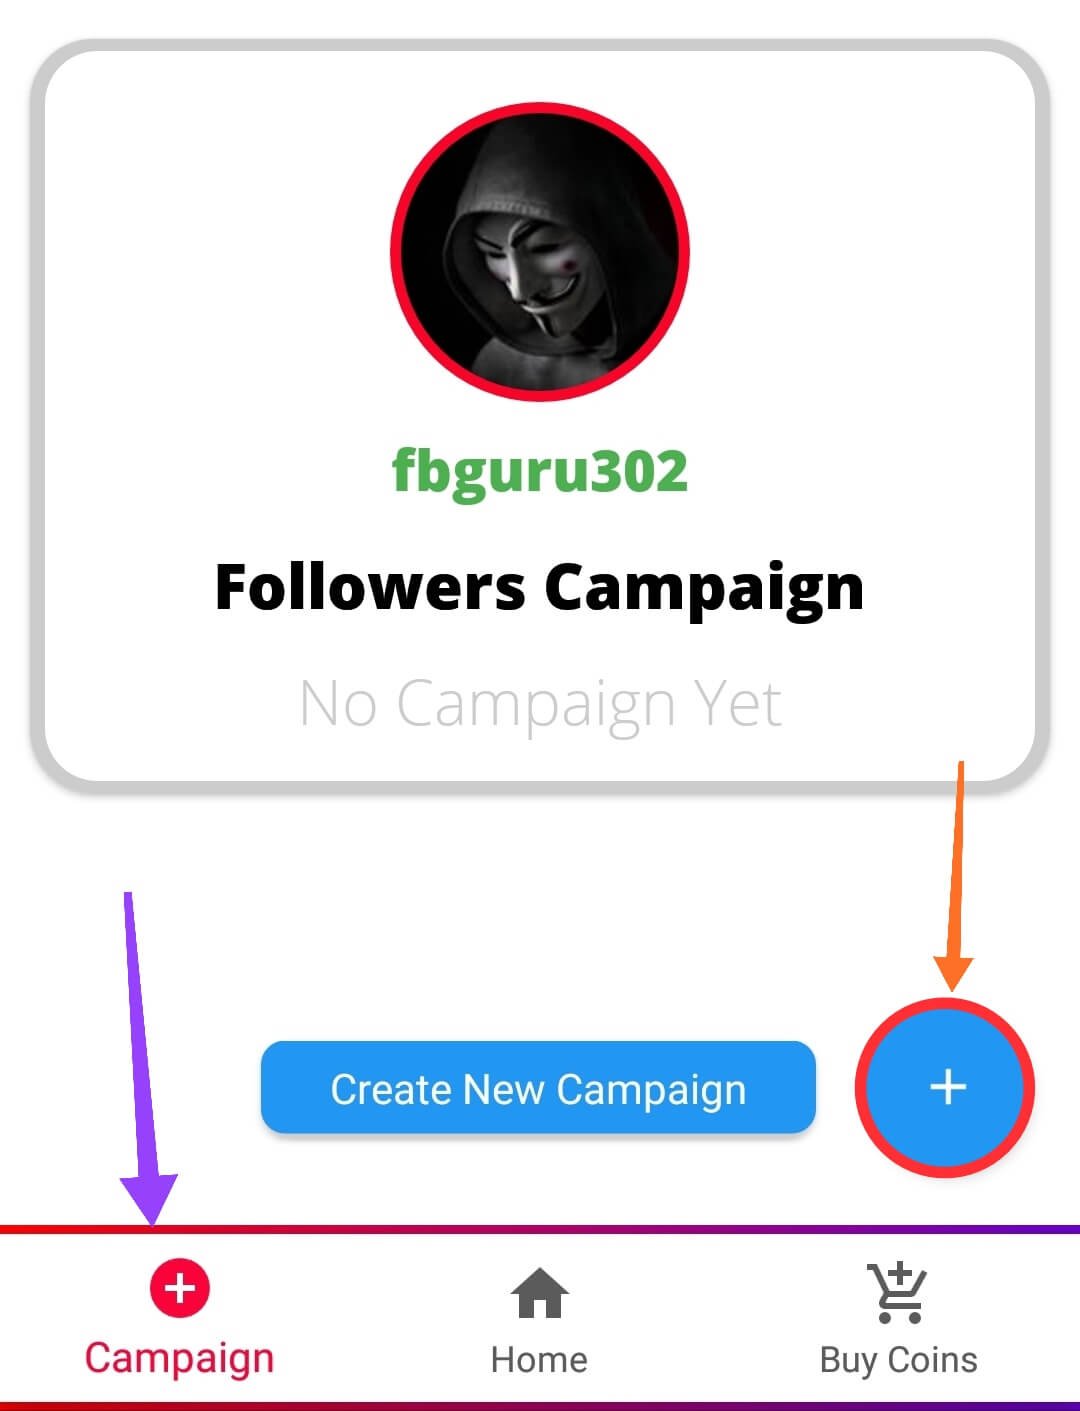 Create New Campaign